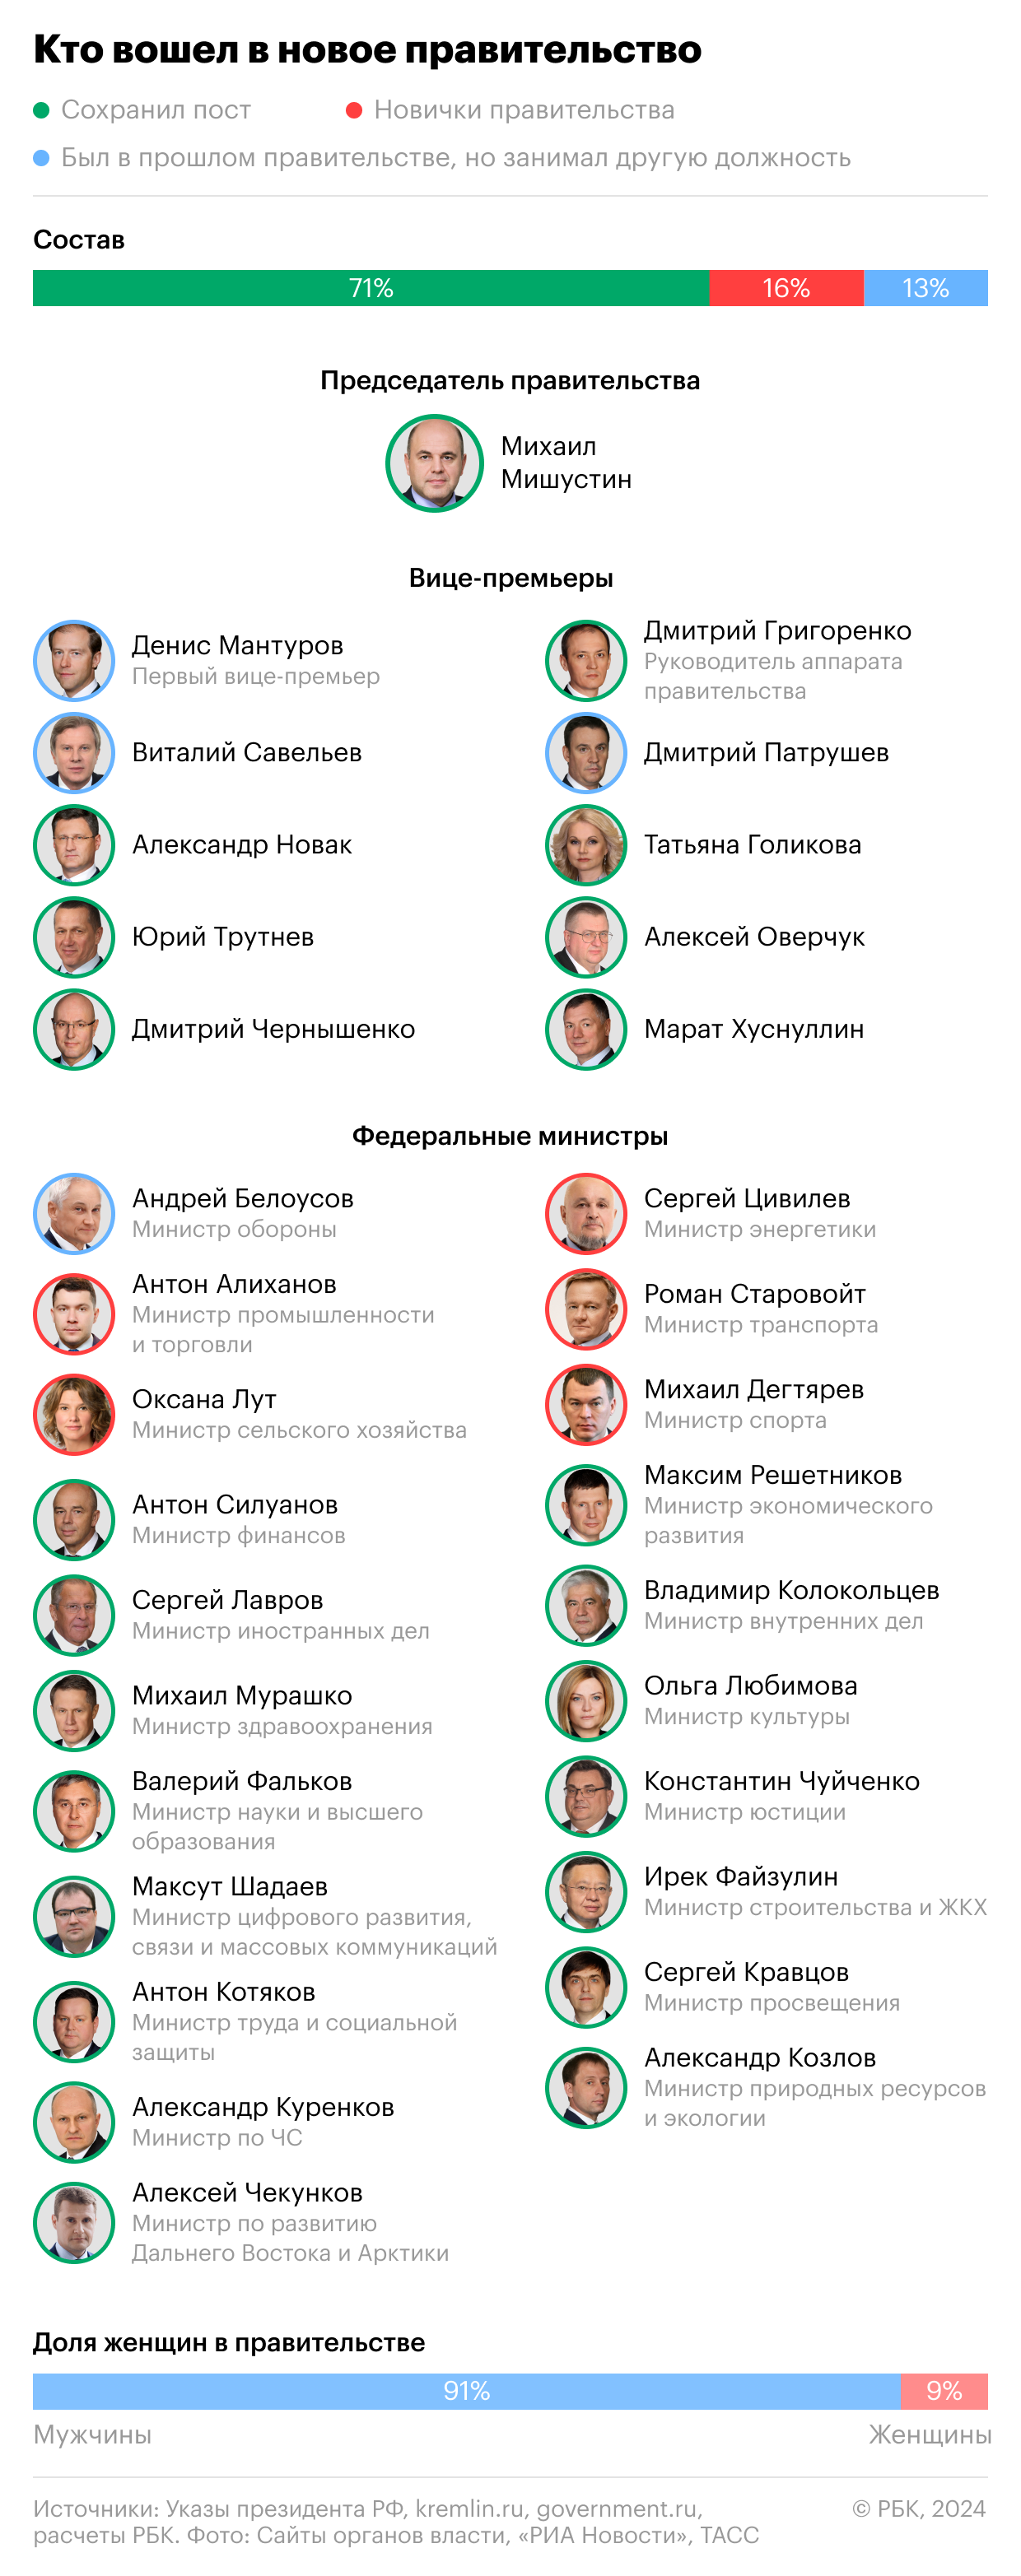 Кадровые назначения в российской власти в цифрах и фактах